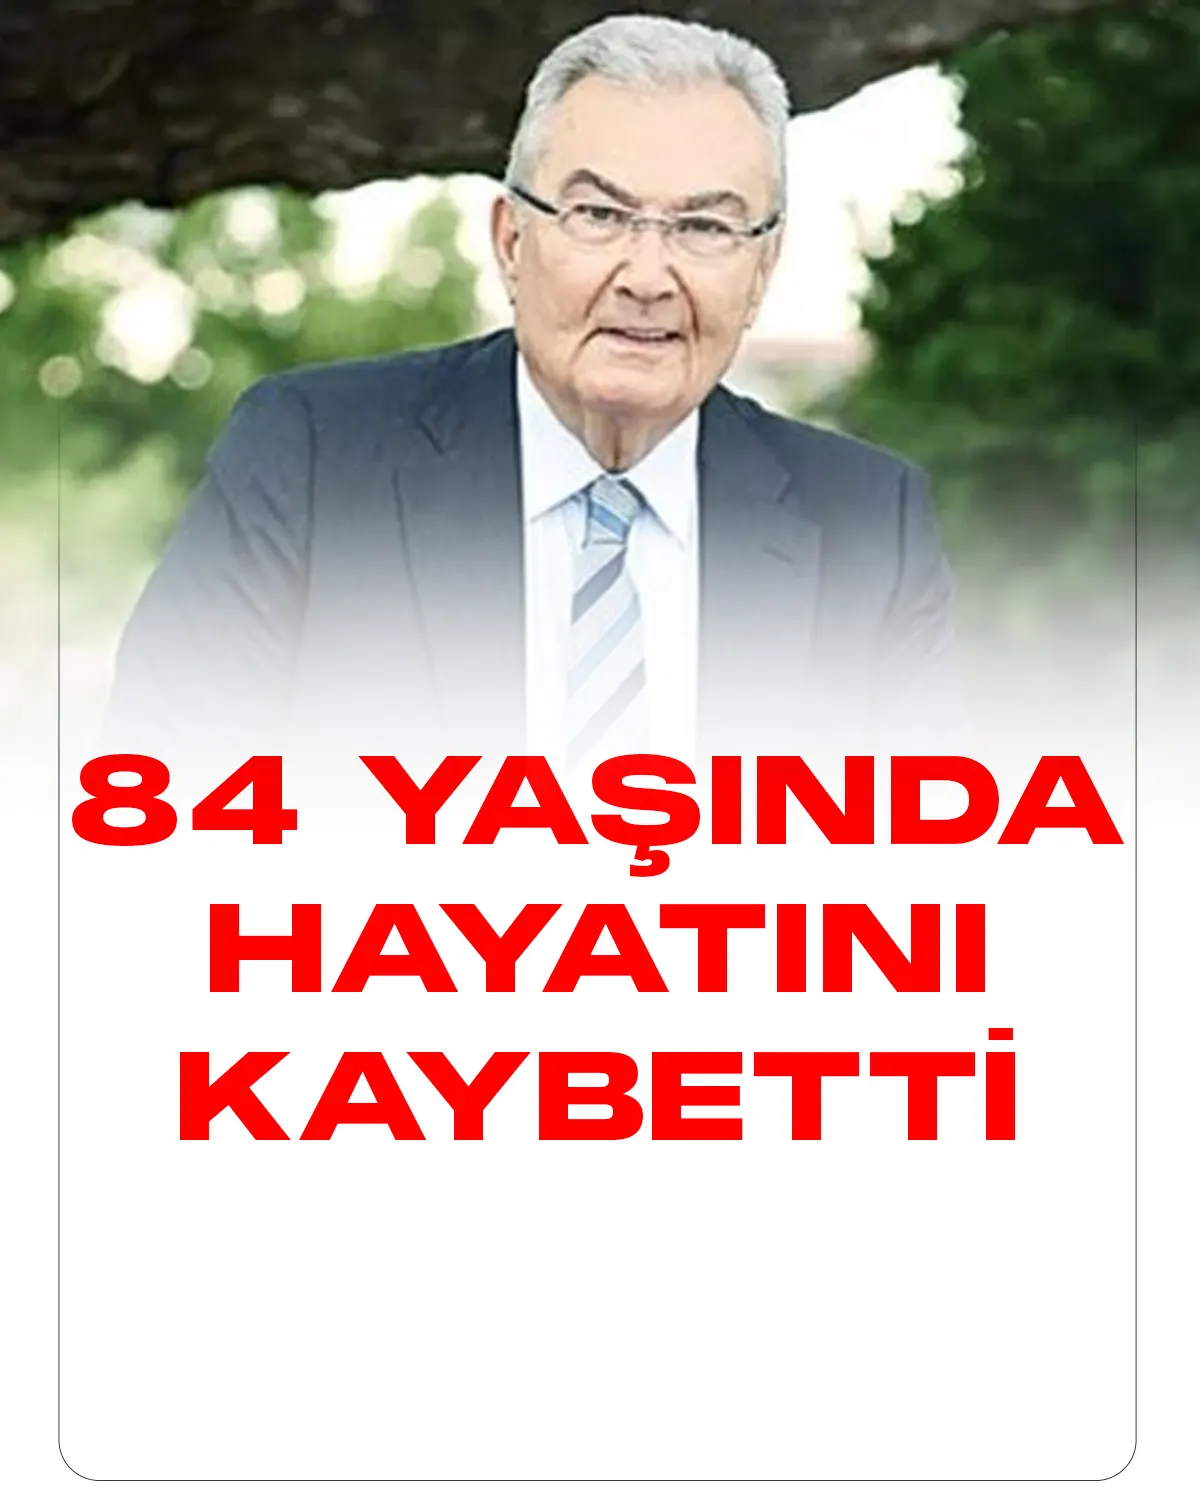 Eski CHP Genel Başkanı ve Antalya Milletvekili Deniz Baykal hayatını kaybetti.